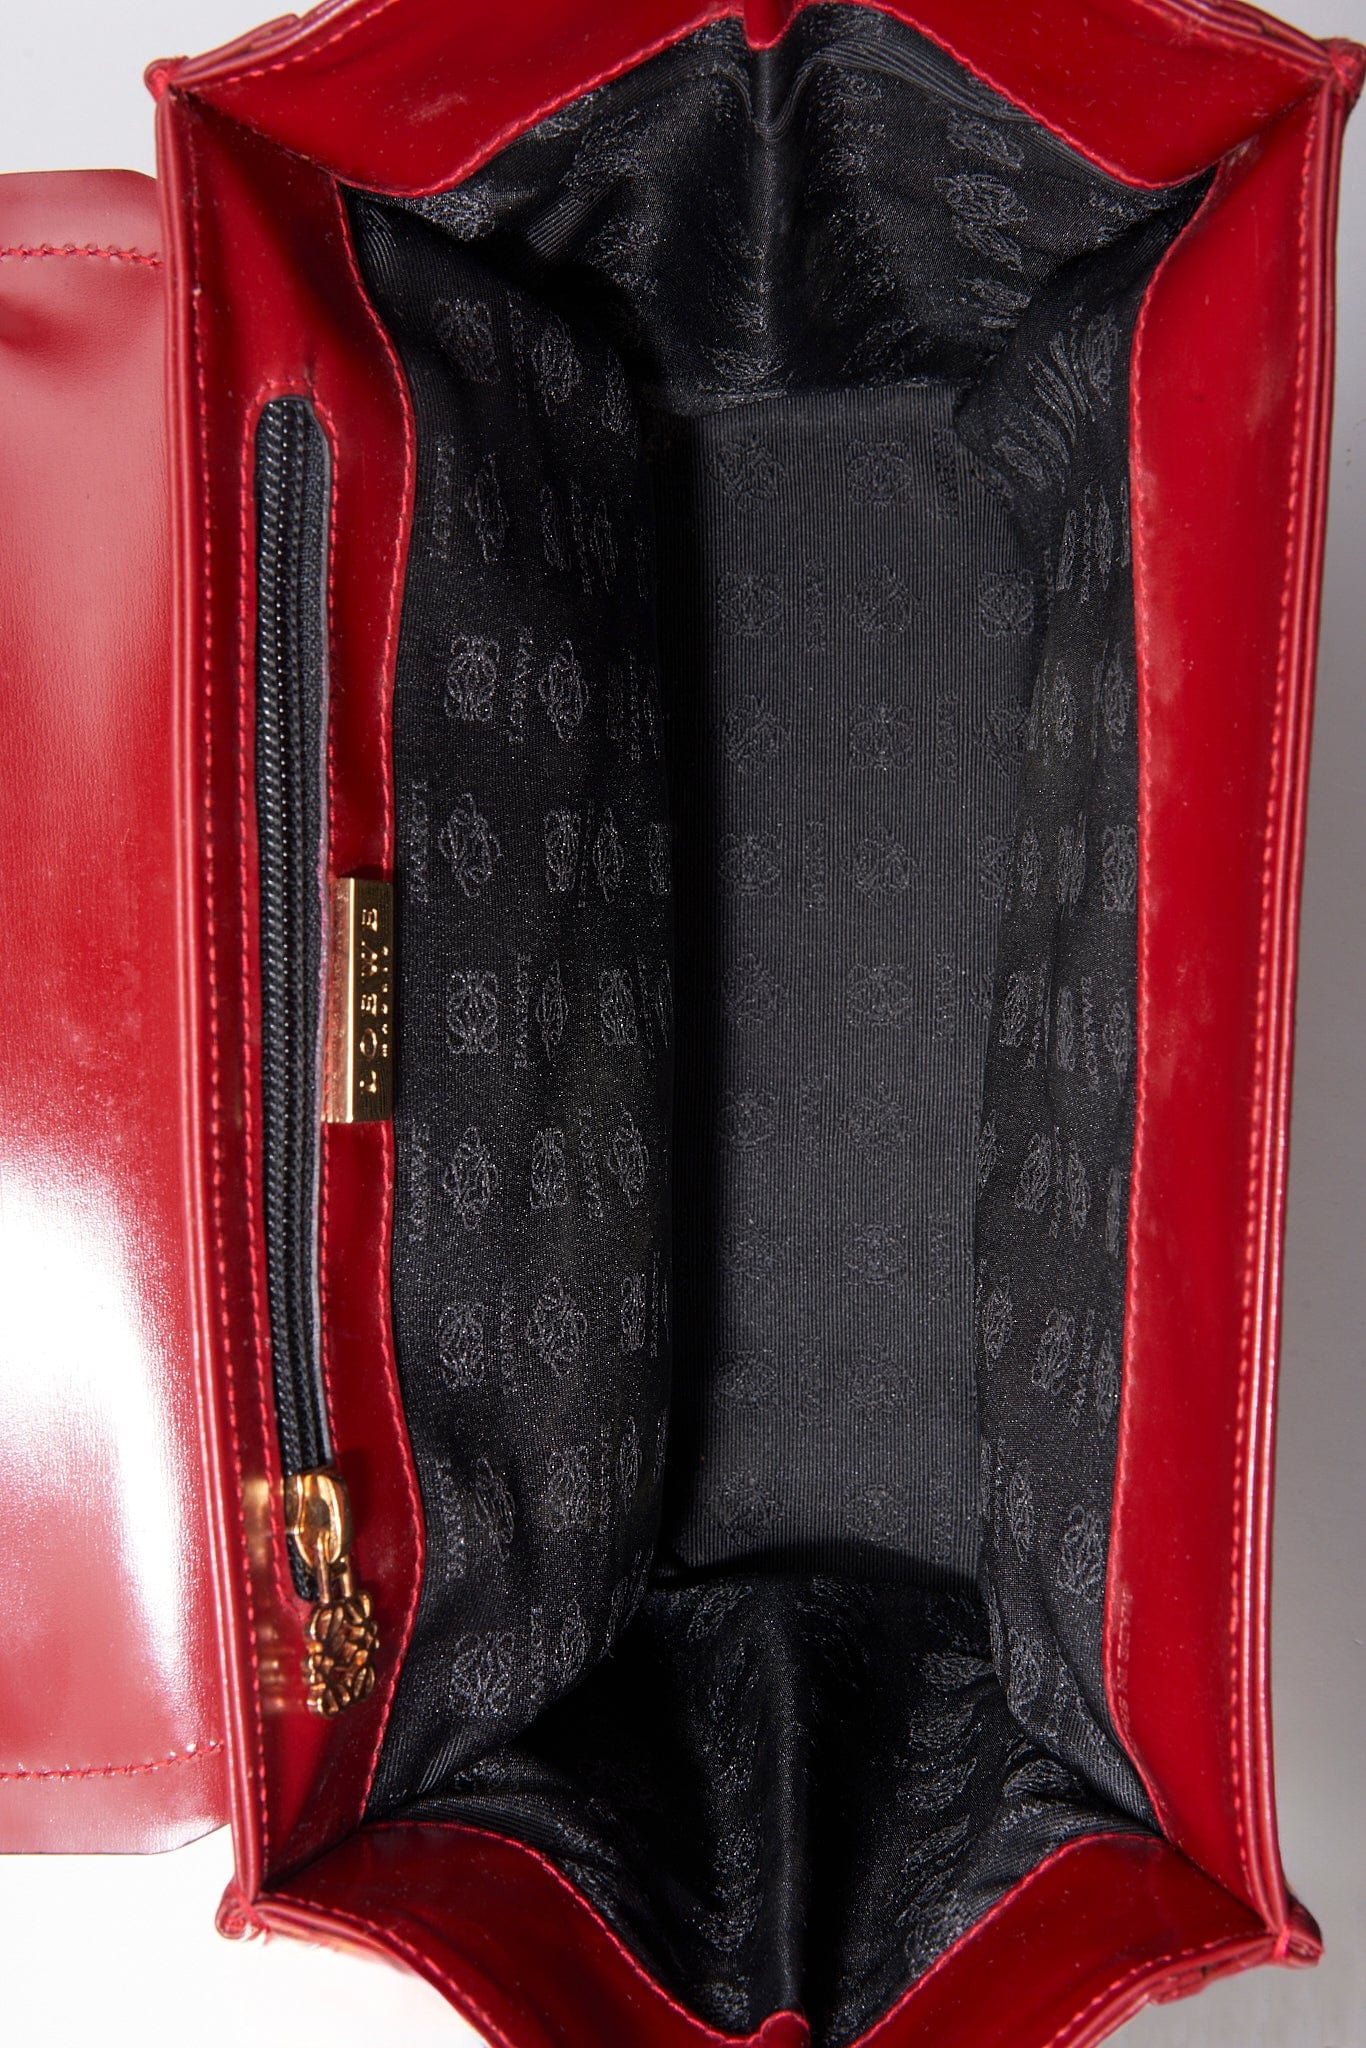 Vintage Loewe Red Leather Top Handle Bag